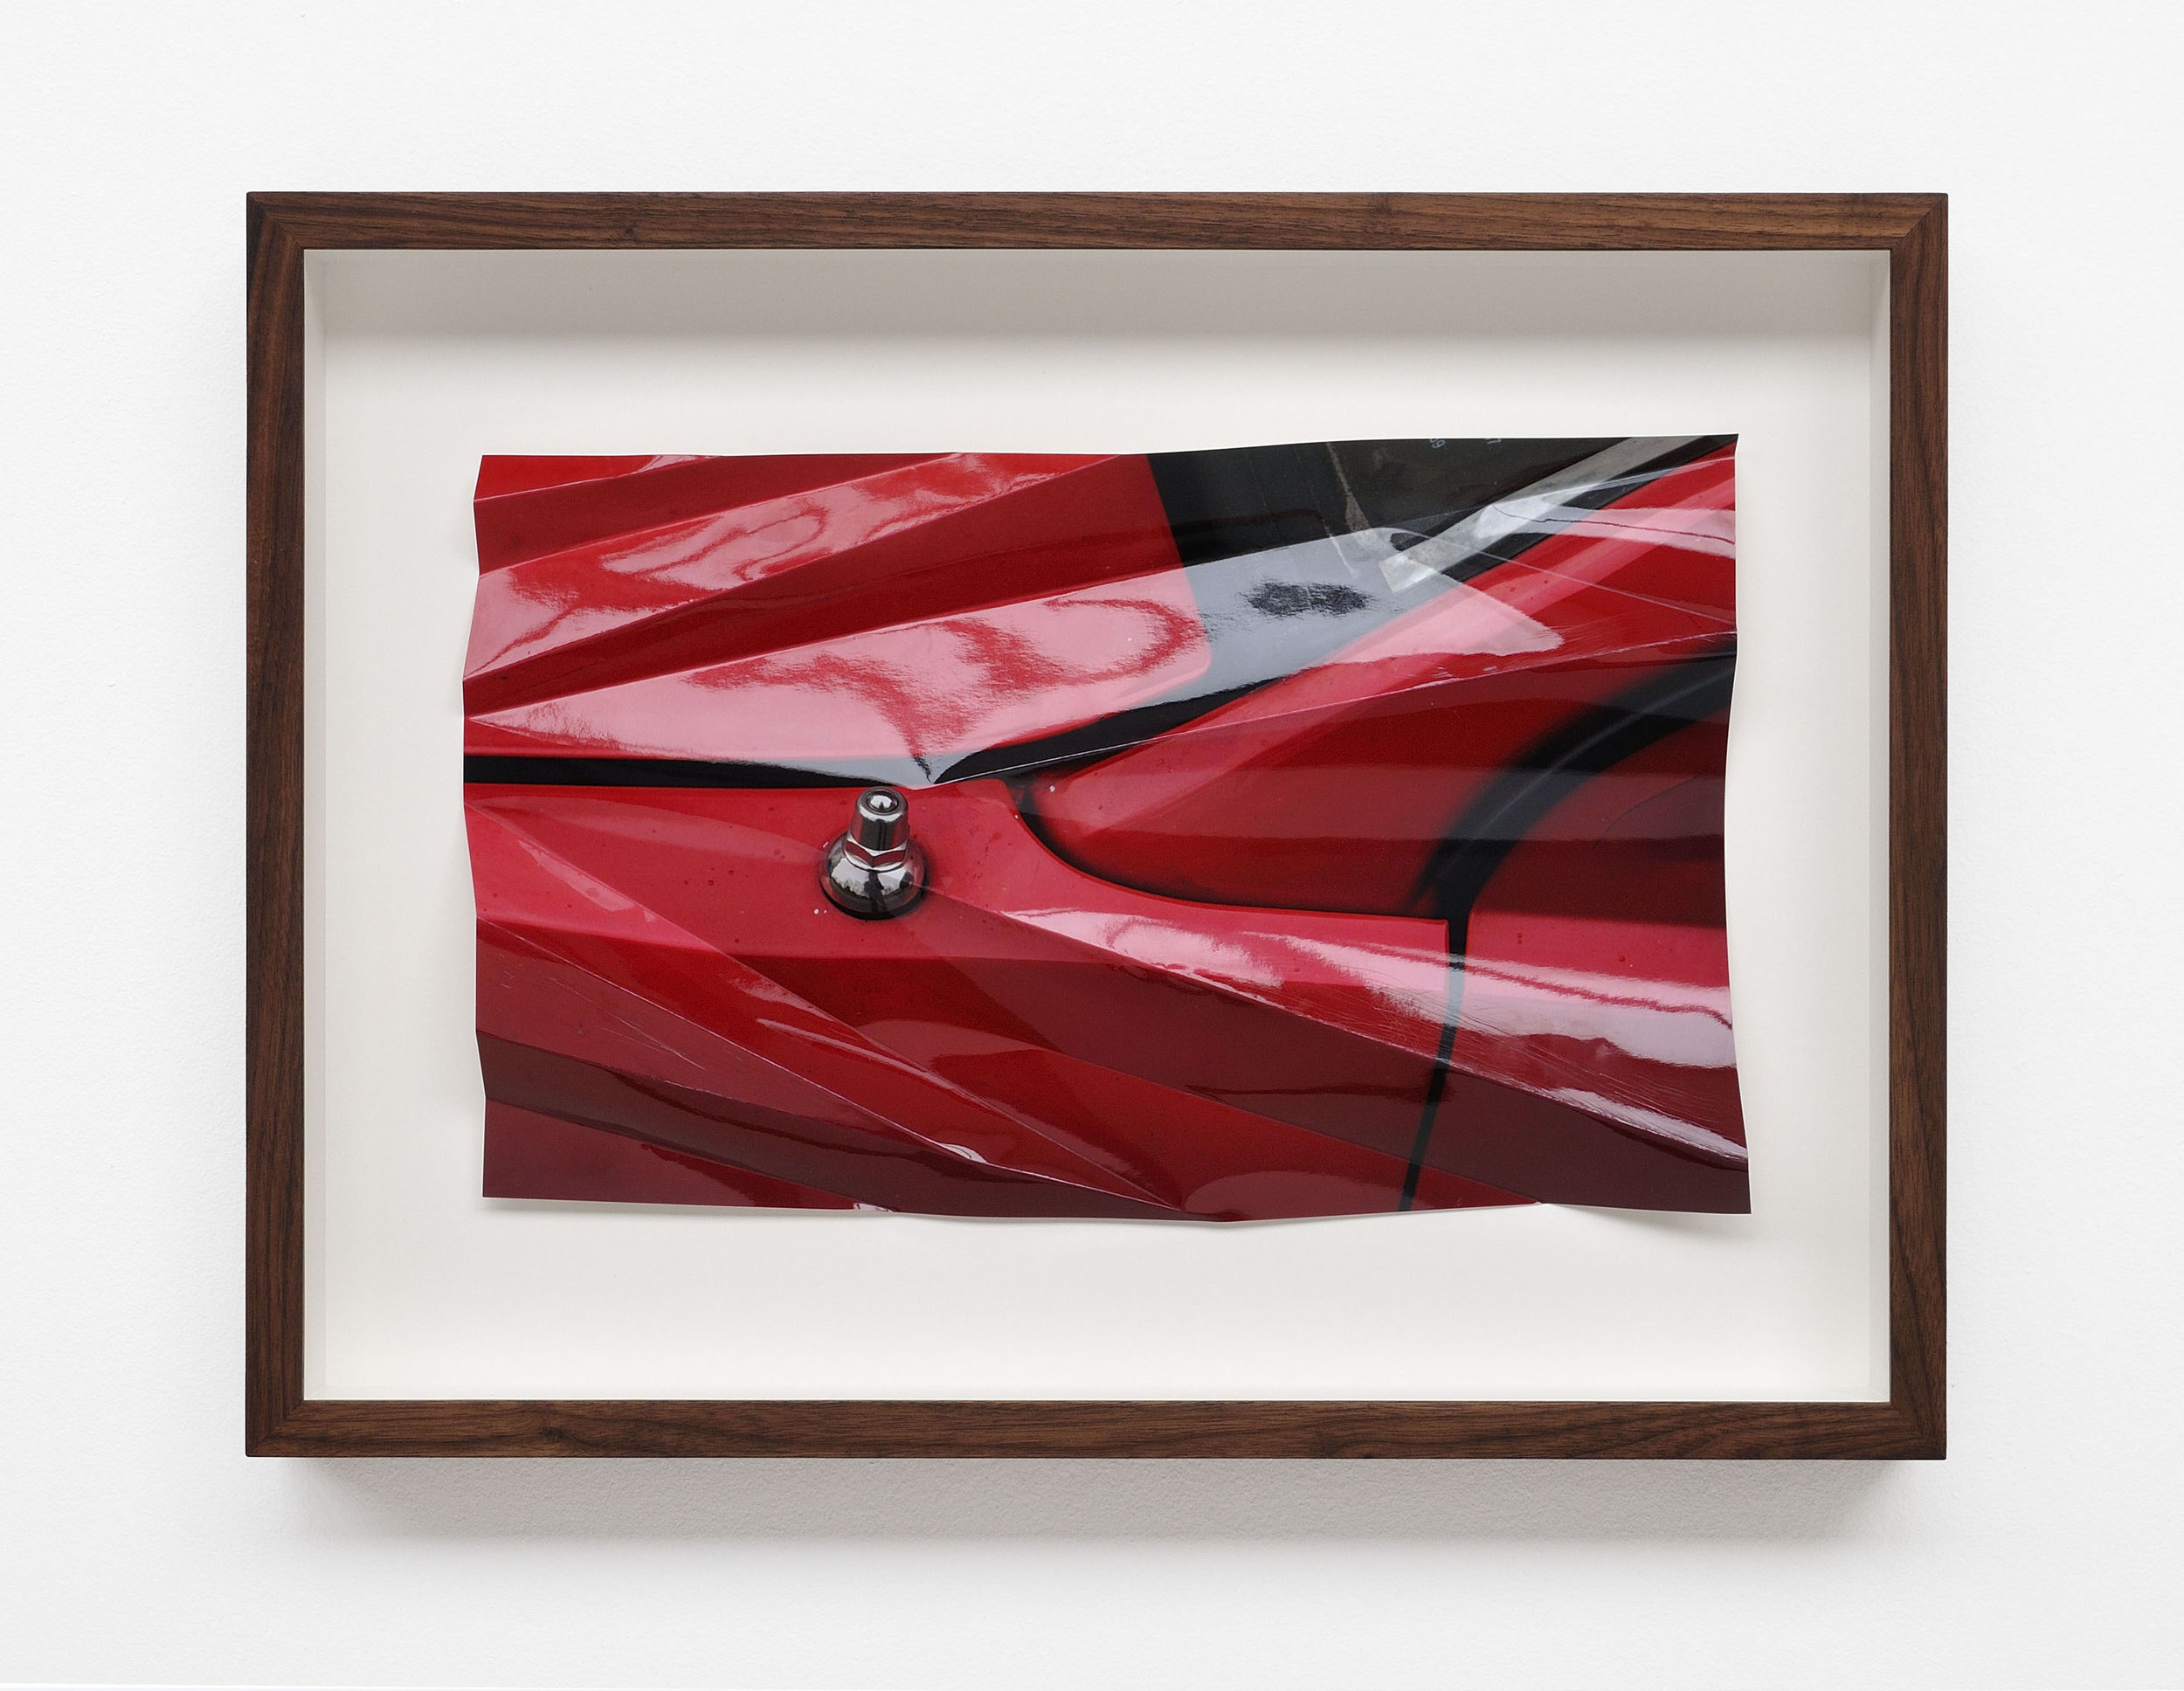  aus der Reihe: Red Crash, 2017, Farbfotografie, gefalzt, ca. 30 x 44 cm 